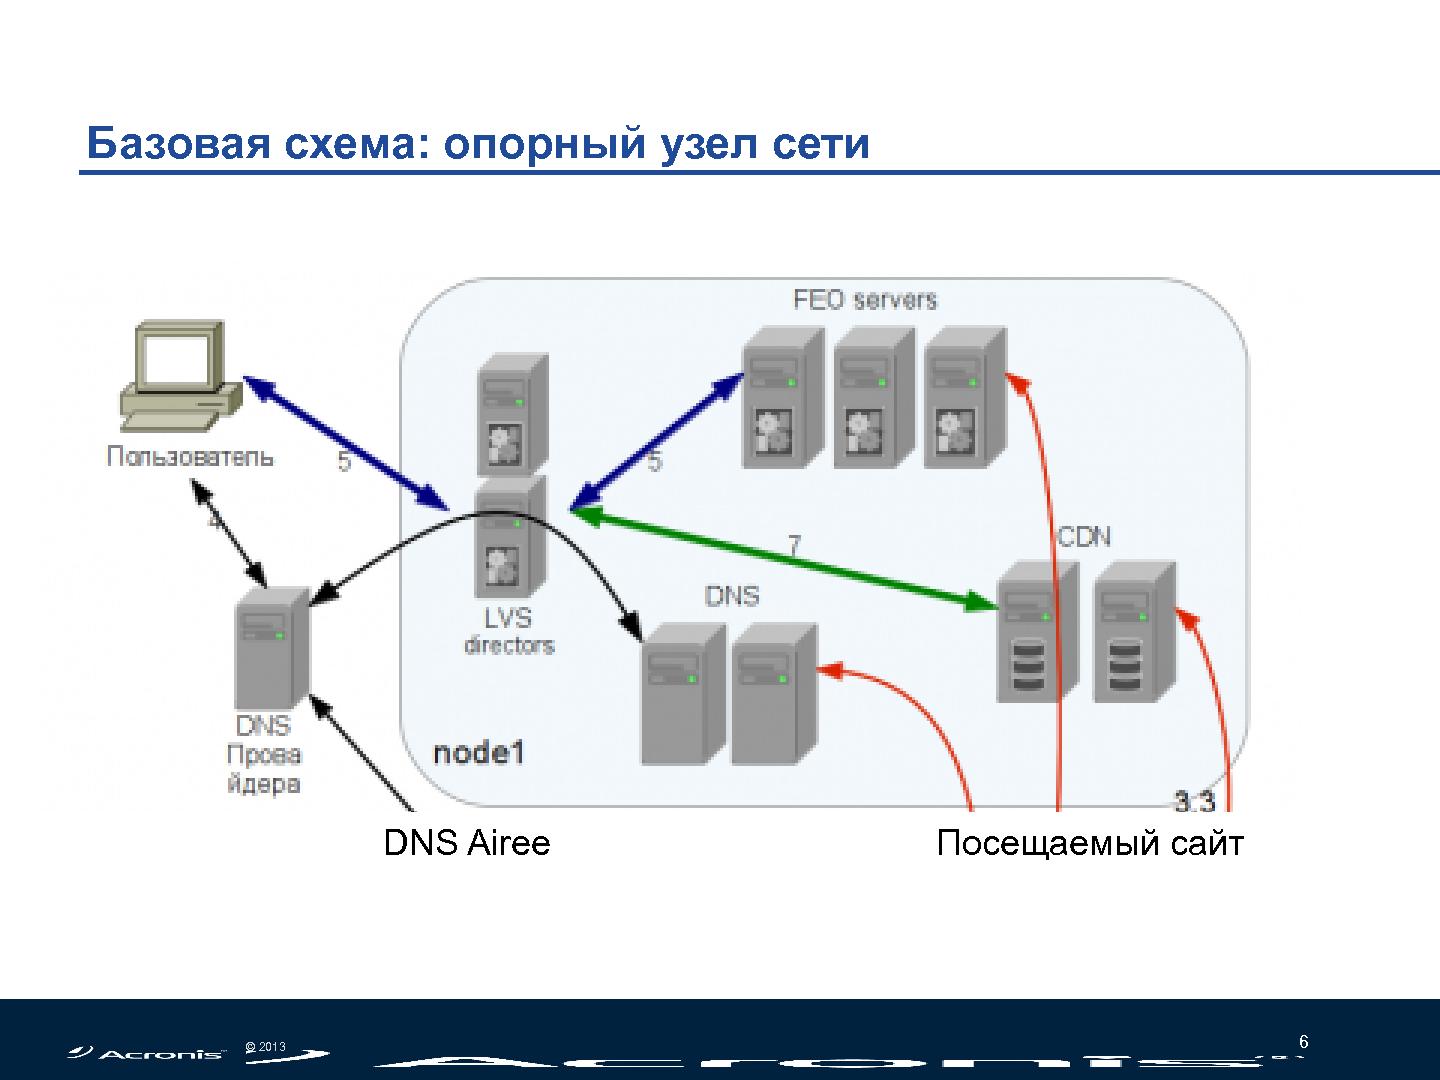 Файл:Облачное ускорение сайтов - DNS, CDN, FEO (Николай Мациевский, SECR-2013).pdf